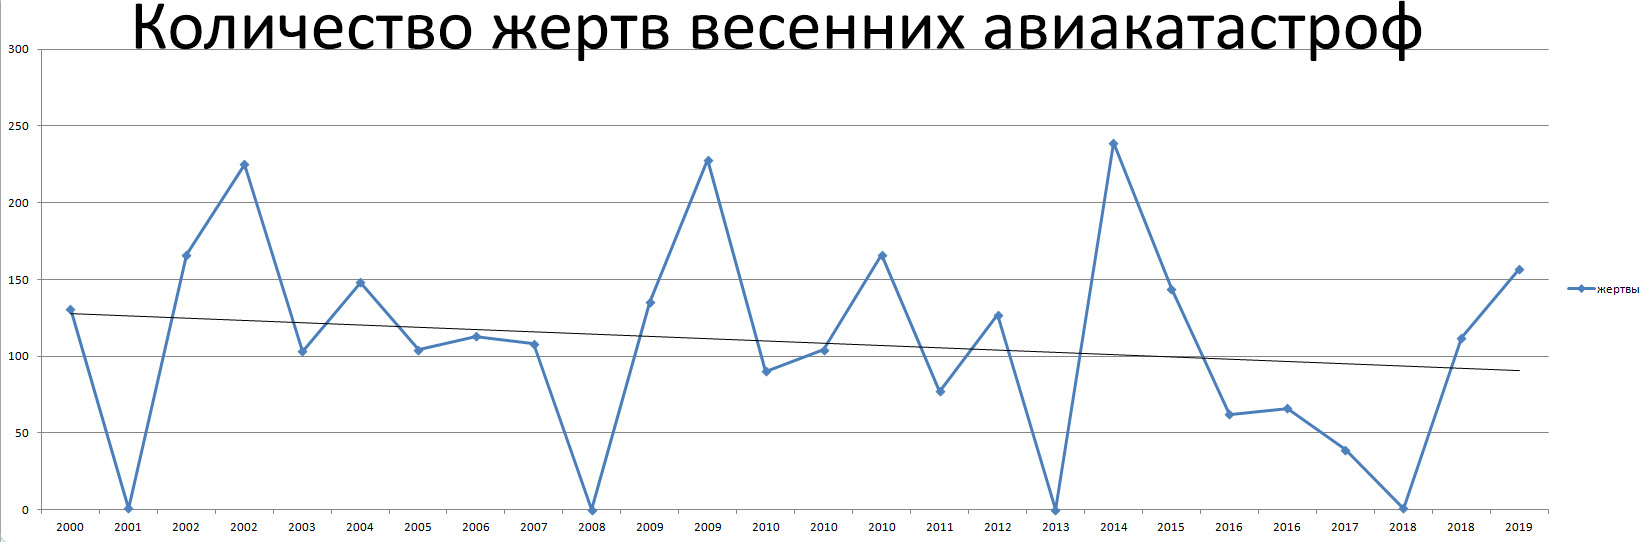 Процент авиакатастроф. Статистика авиакатастроф. Количество авиакатастроф по годам. Причины авиакатастроф диаграмма. Число авиакатастроф в России.